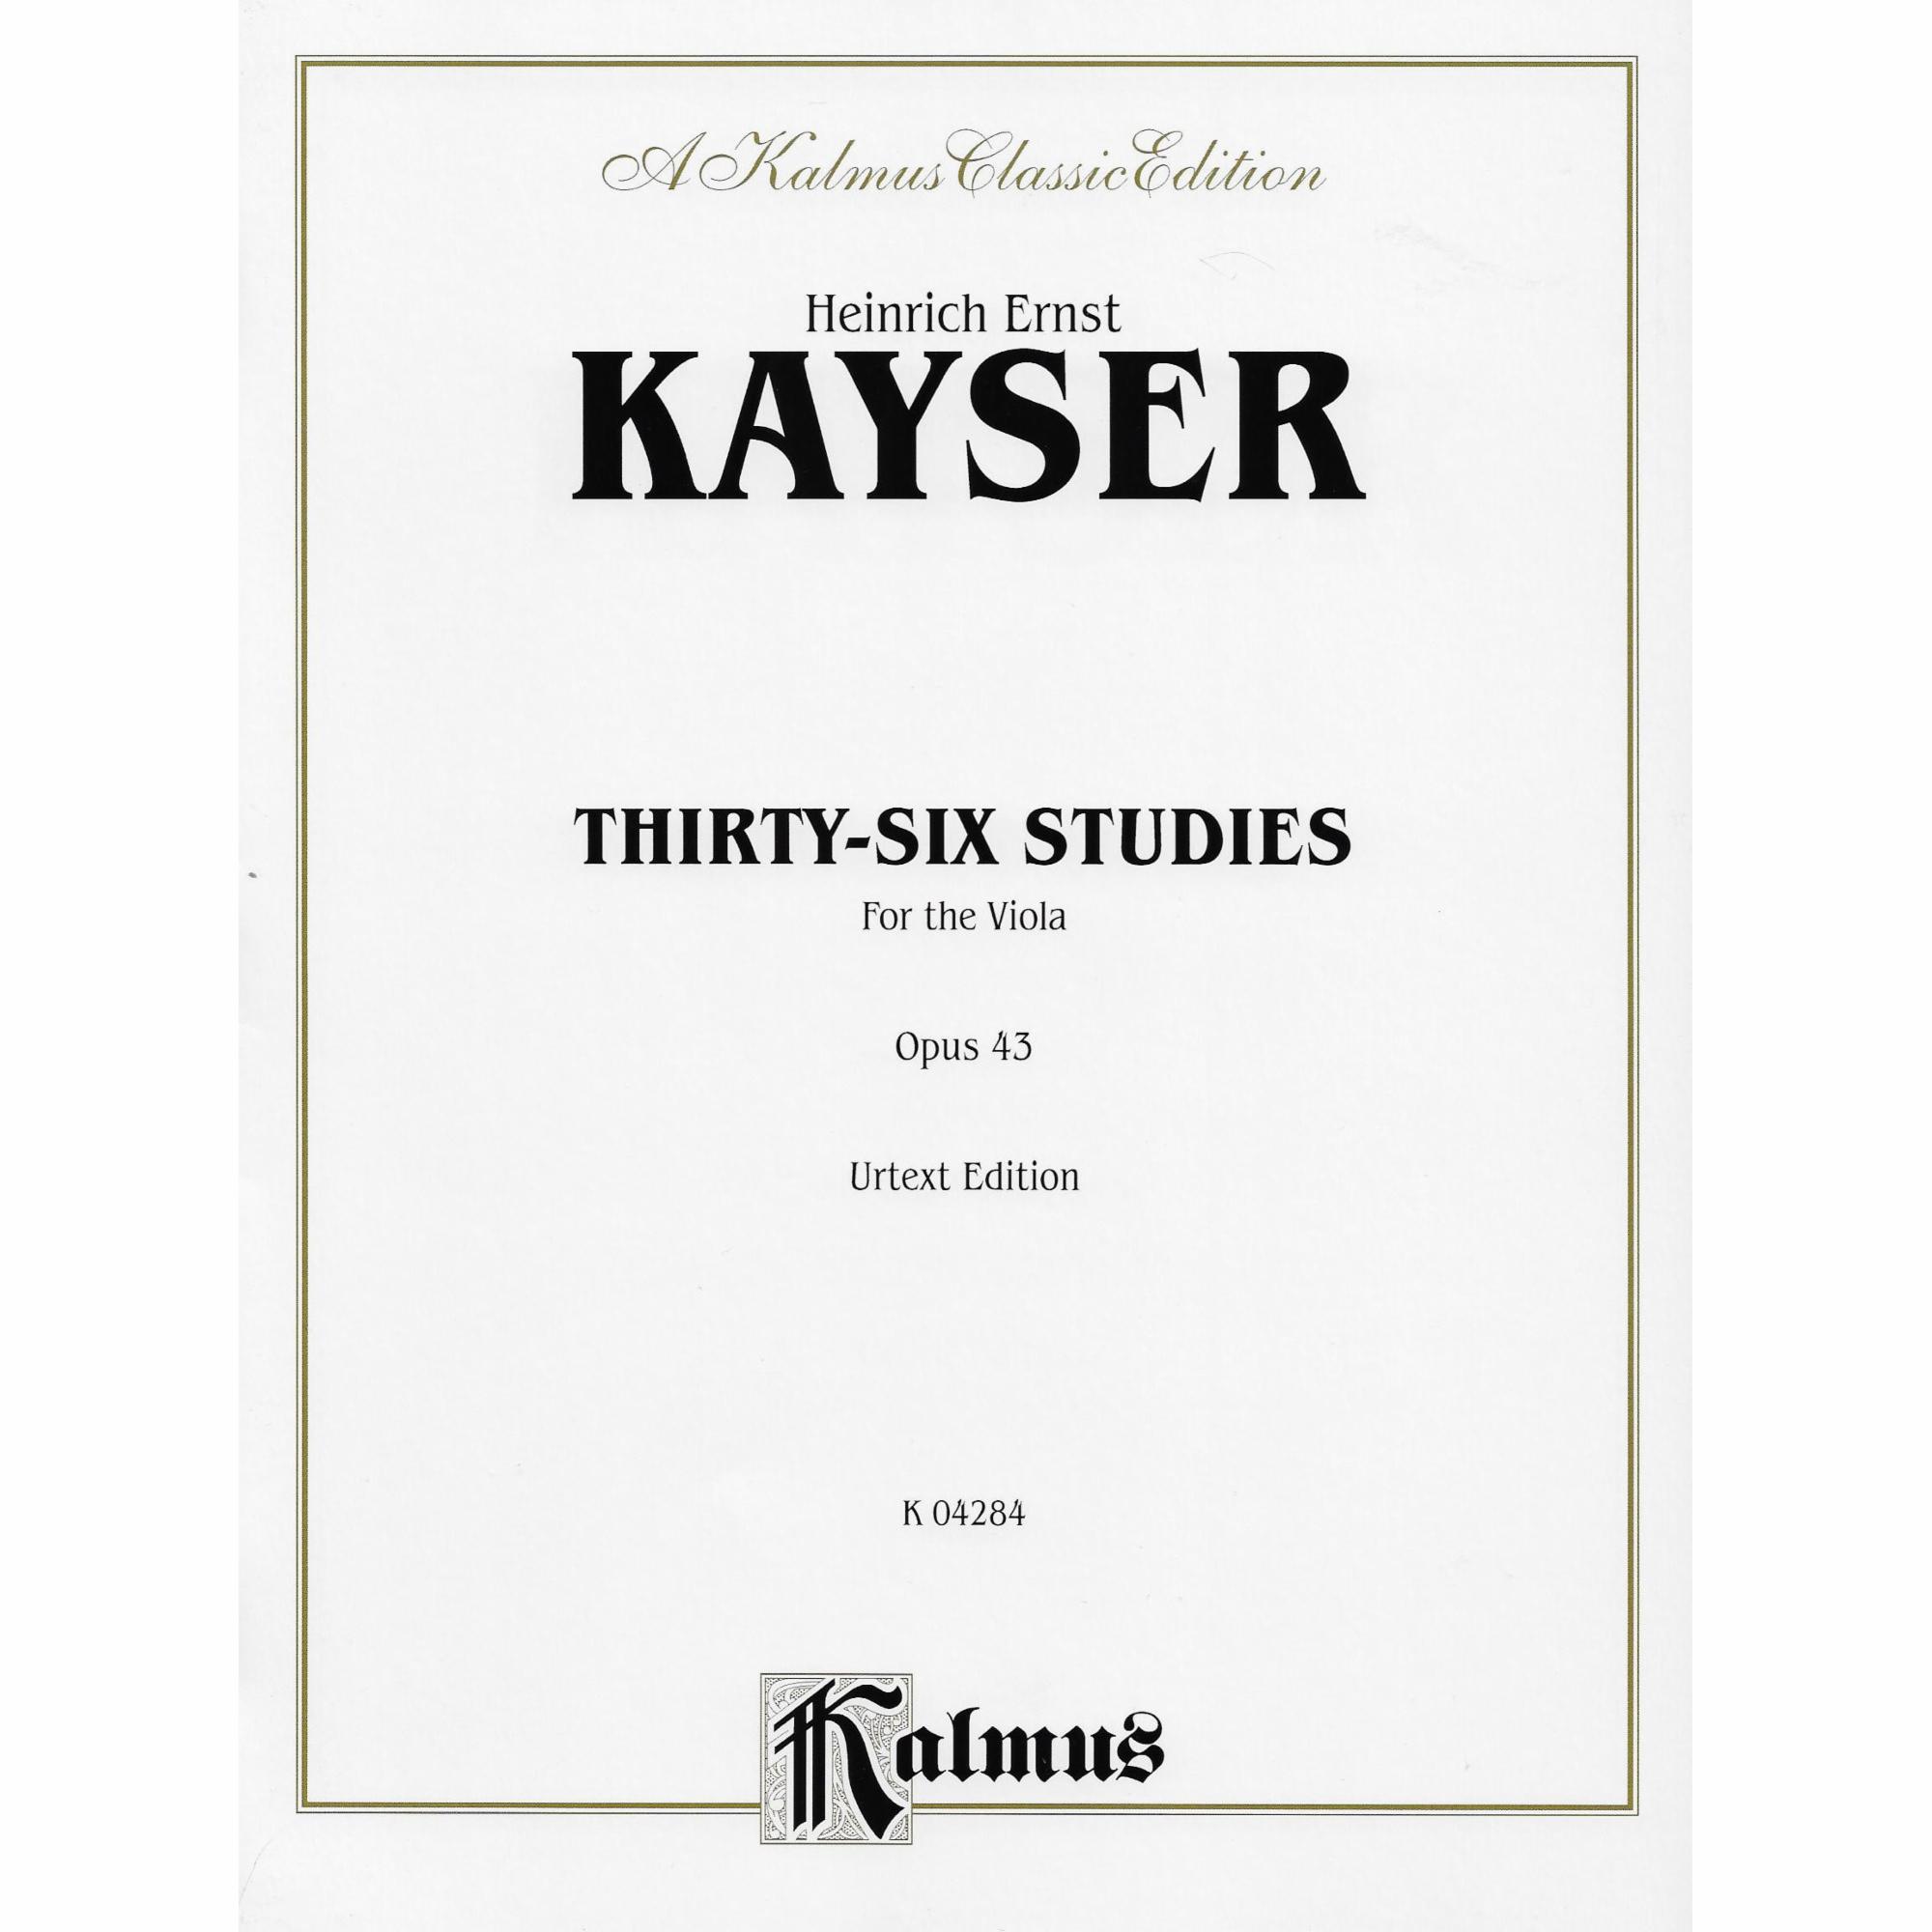 Kayser -- Thirty-Six Studies, Op. 43 for Viola